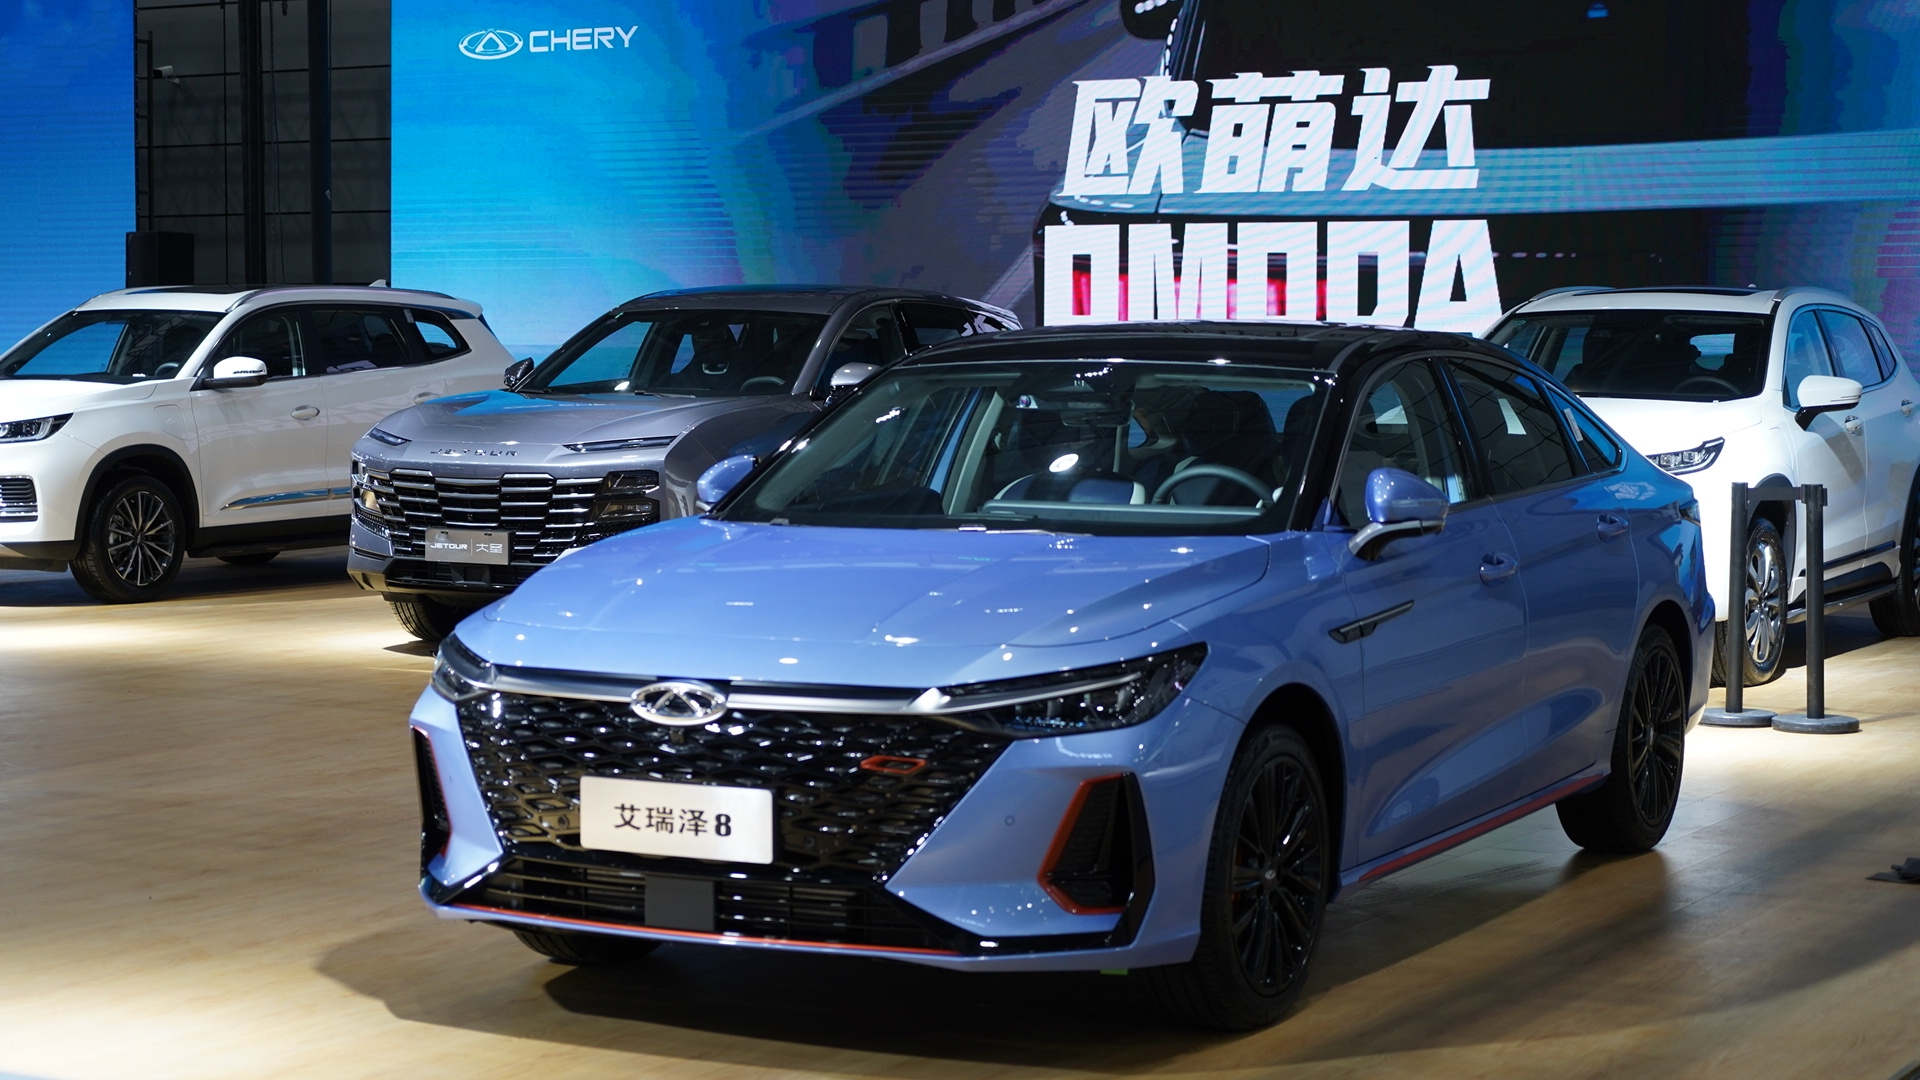 直击2020北京车展| 2020首个A级国际车展“重启” 新能源汽车“唱主角” 车企平台化竞争“白热化”-汽车频道-和讯网